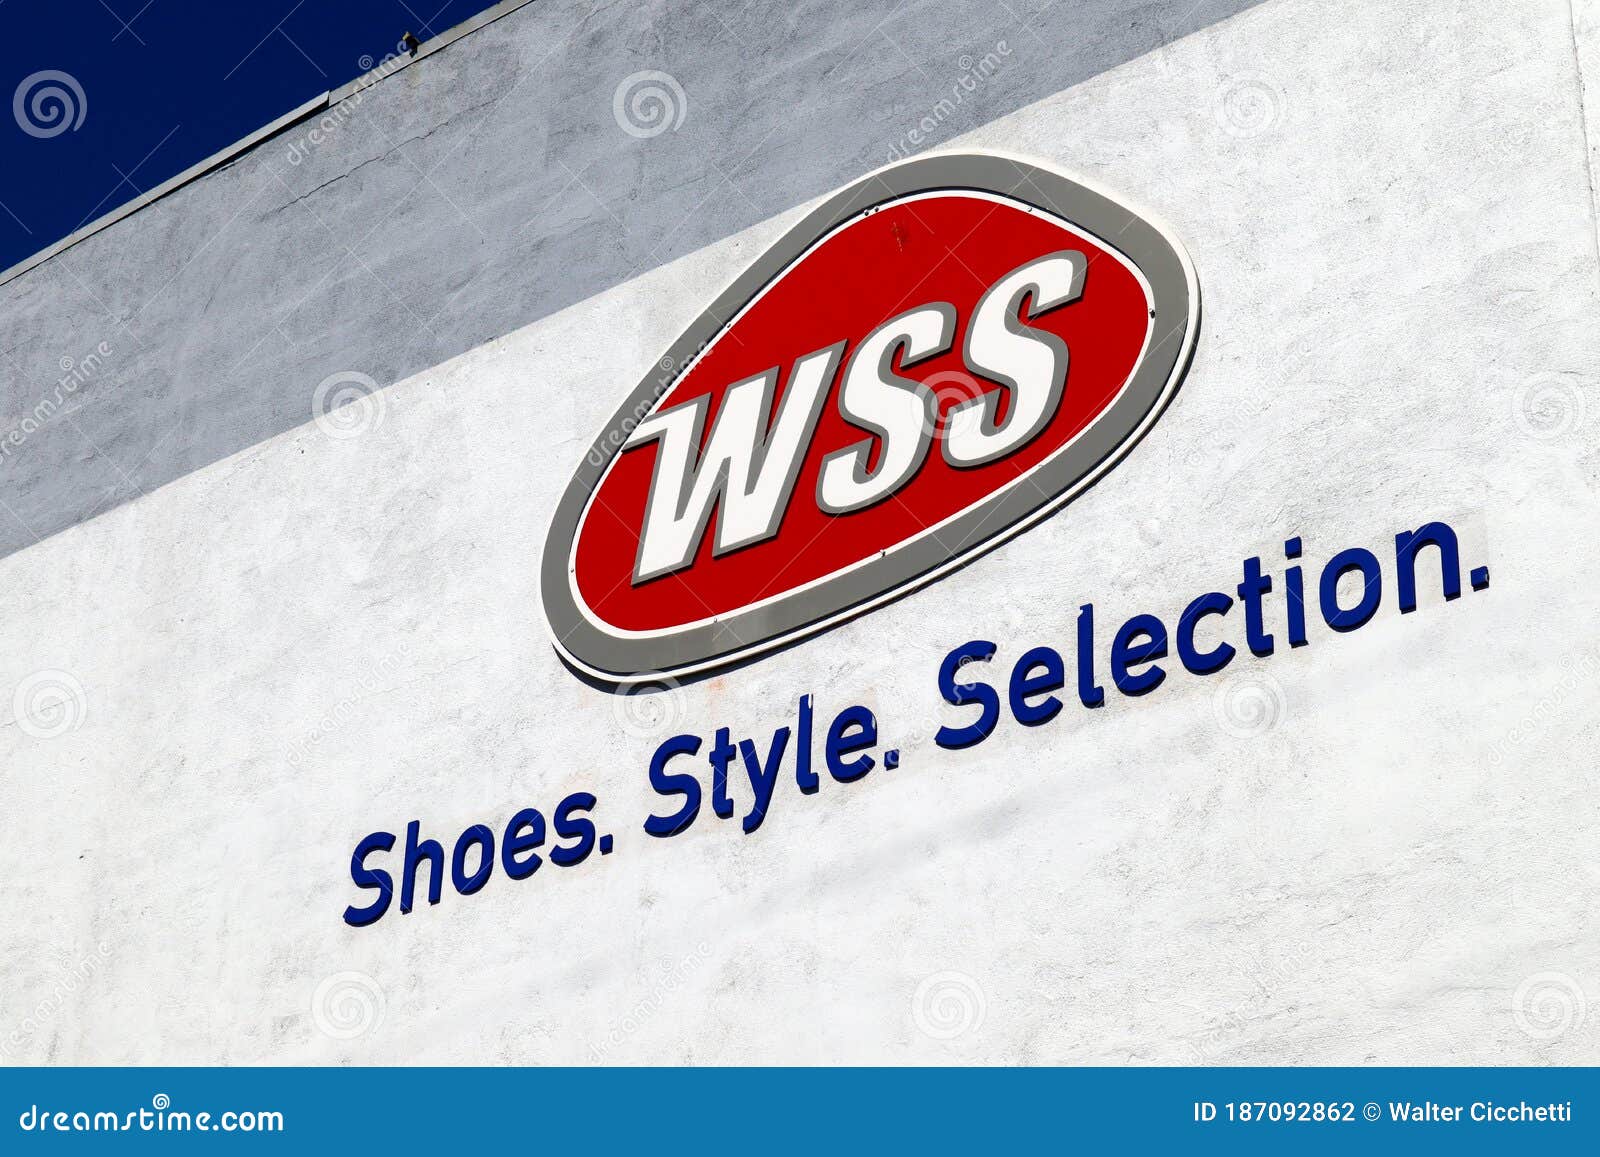 wss shoe sale